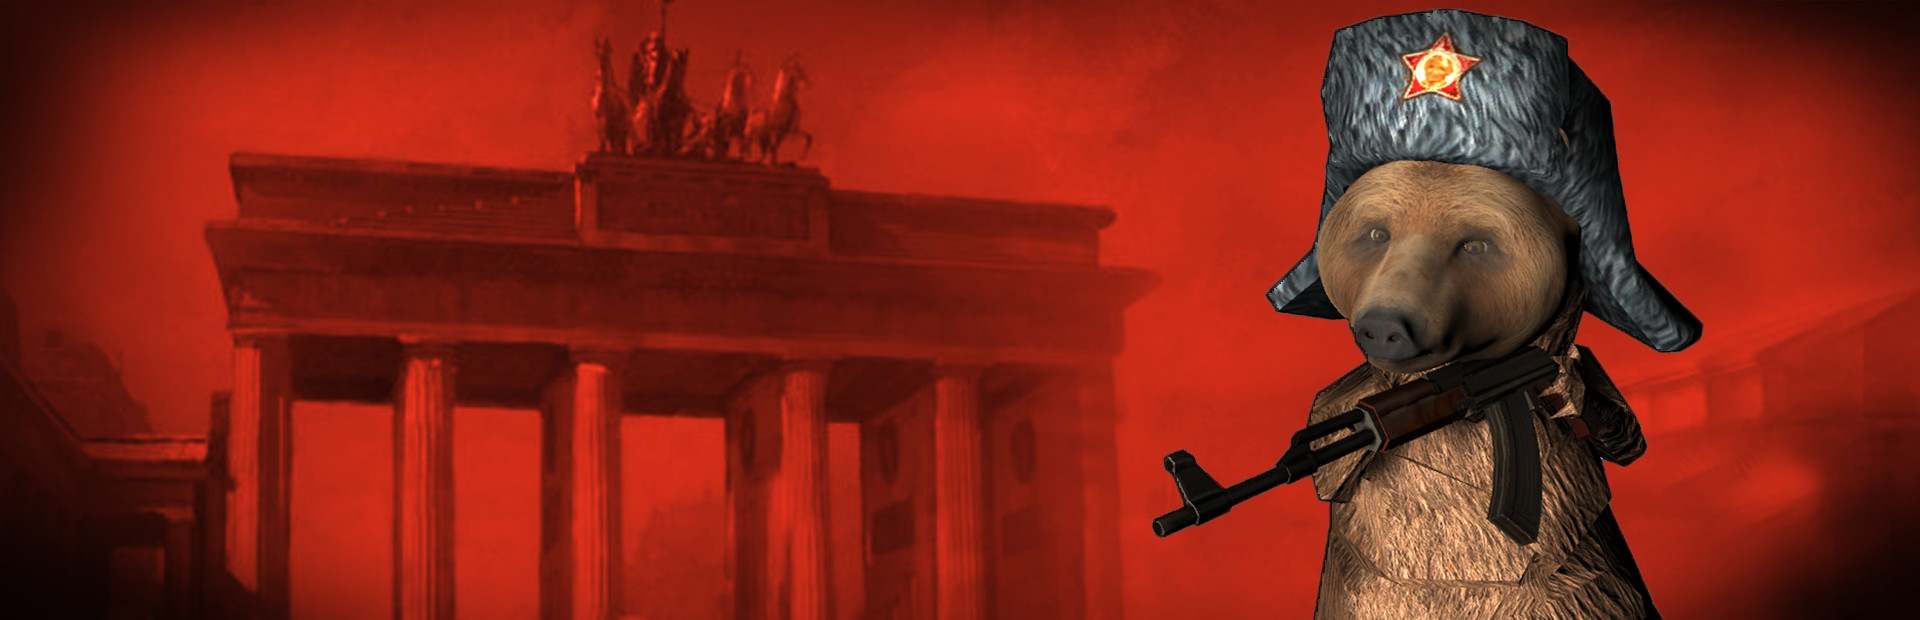 BEAR, VODKA, FALL OF BERLIN! ðŸ» cover image